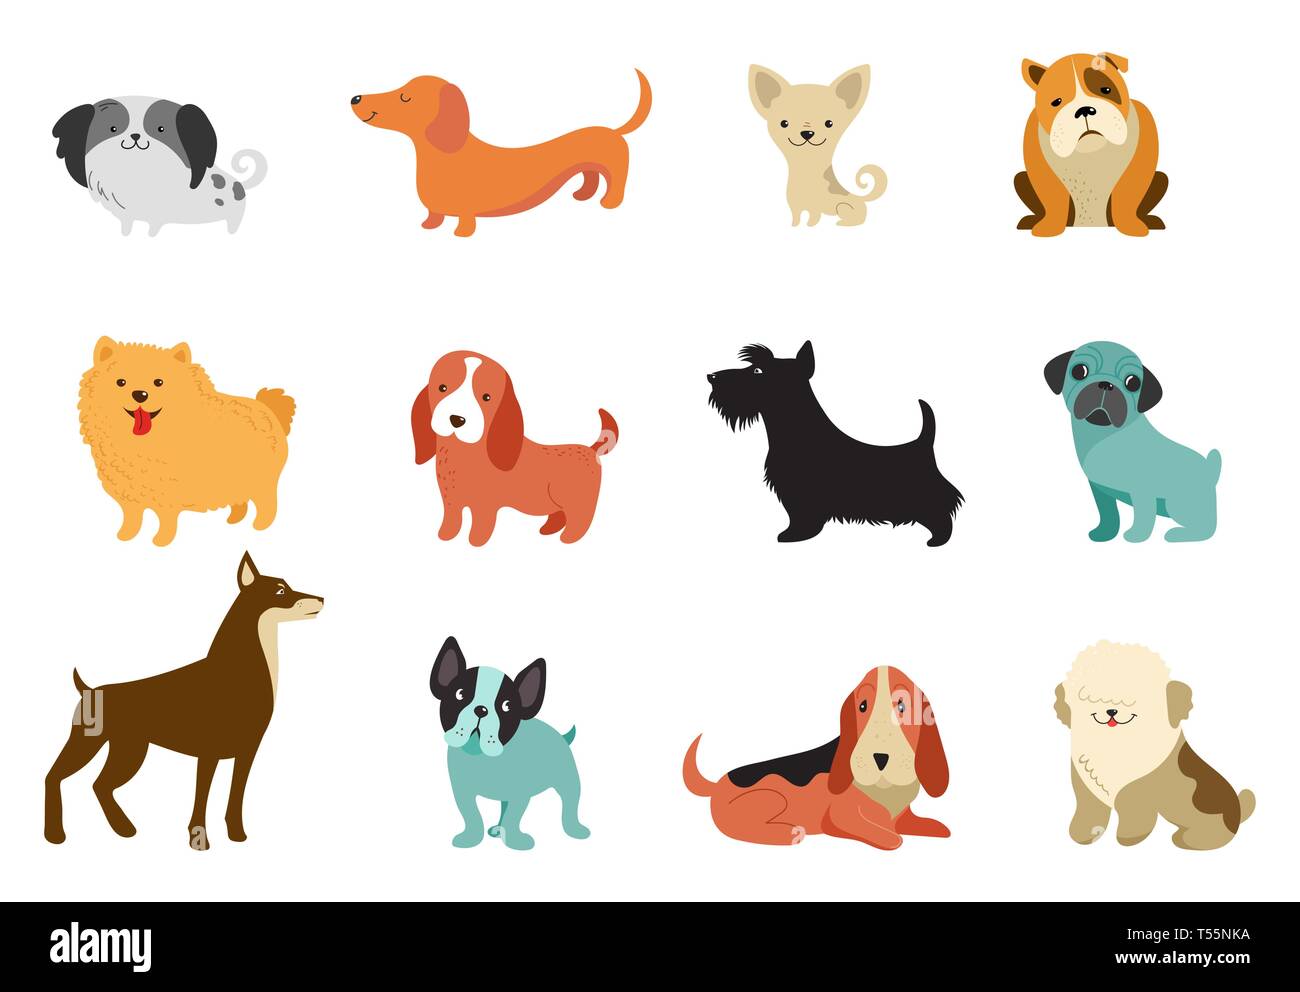 Hunde - Sammlung von Vektorgrafiken. Lustige Cartoons, verschiedene Hunderassen, flacher Stil Stock Vektor